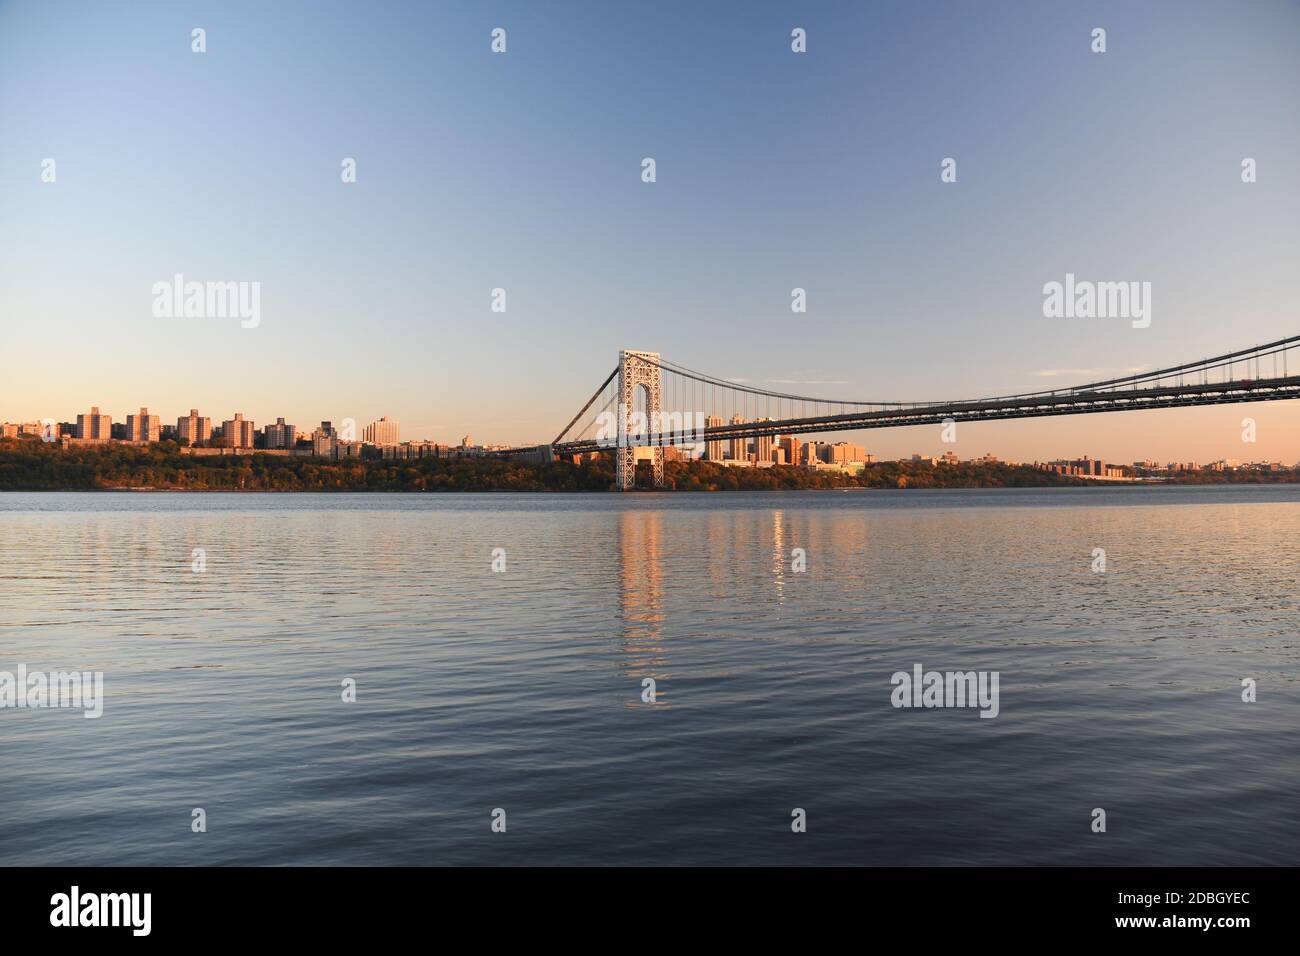 STAHLVORHANG: BAND 2: Die George Washington Bridge ist der aufsehenste Stern vieler schöner Skyscapes entlang des Hudson Flusses in den Palisades von NJ Stockfoto